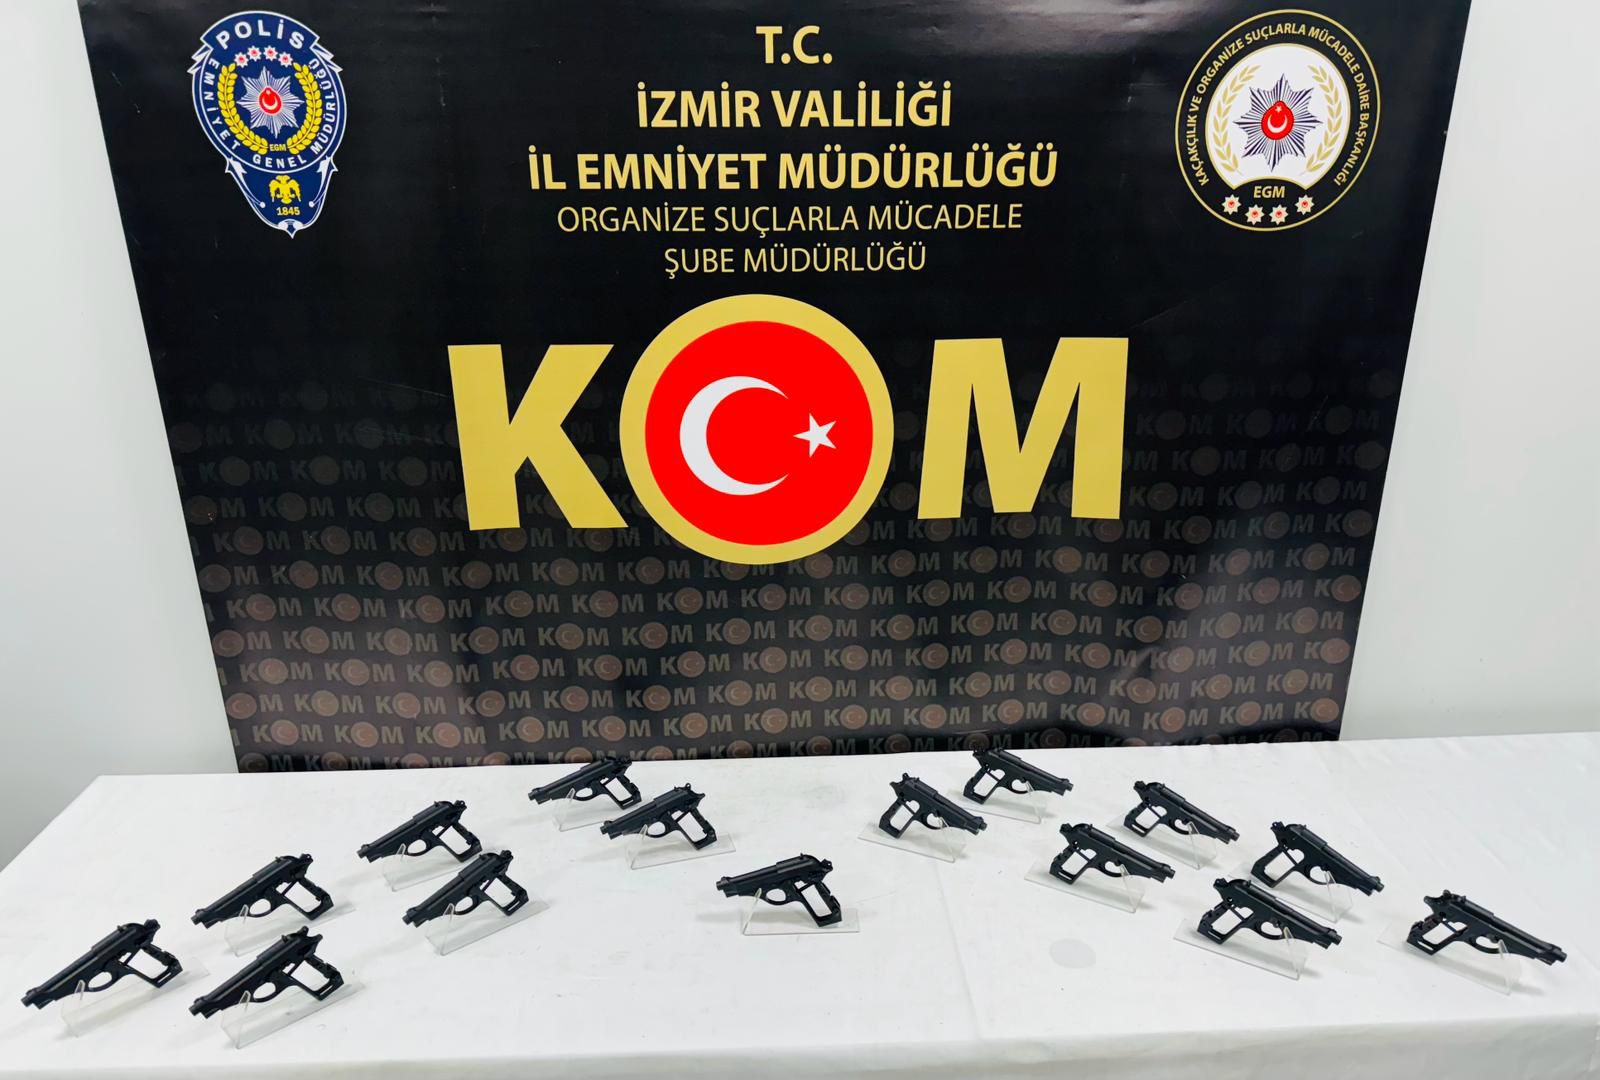 İzmir'de 15 ruhsatsız tabanca ele geçirildi, 1 şüpheli tutuklandı